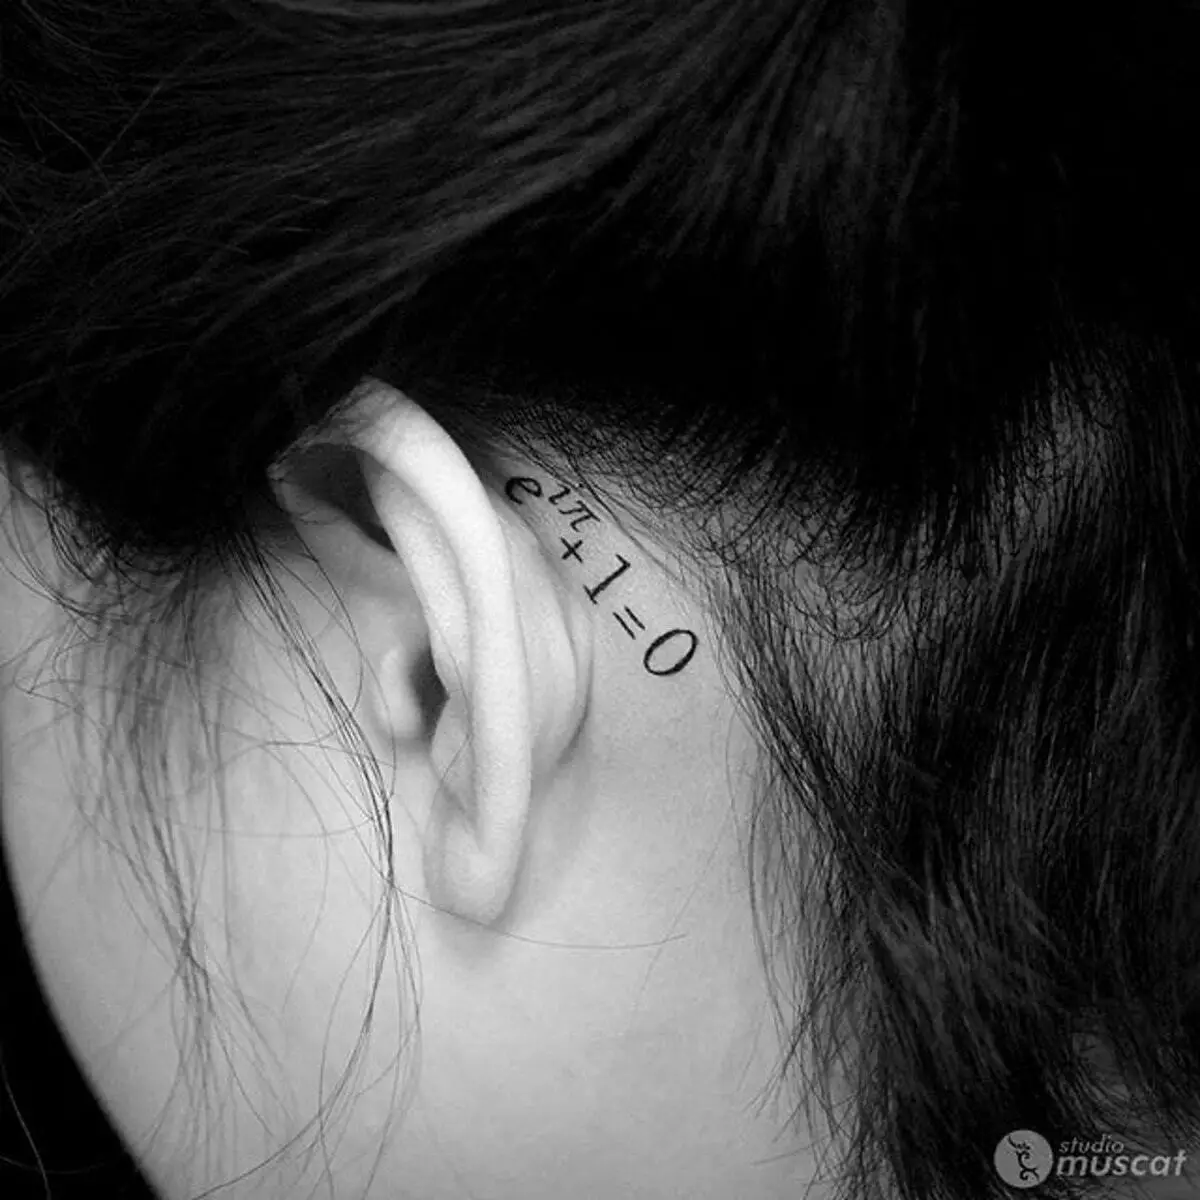 Τατουάζ πίσω από το αυτί για τα κορίτσια (39 φωτογραφίες): Σκίτσα μικρών τατουάζ, η αξία των γυναικείων μίνι-τατουάζ, τατουάζ με αστέρια και επιγραφές, φίδια και φτερά, άλλες επιλογές 14190_21